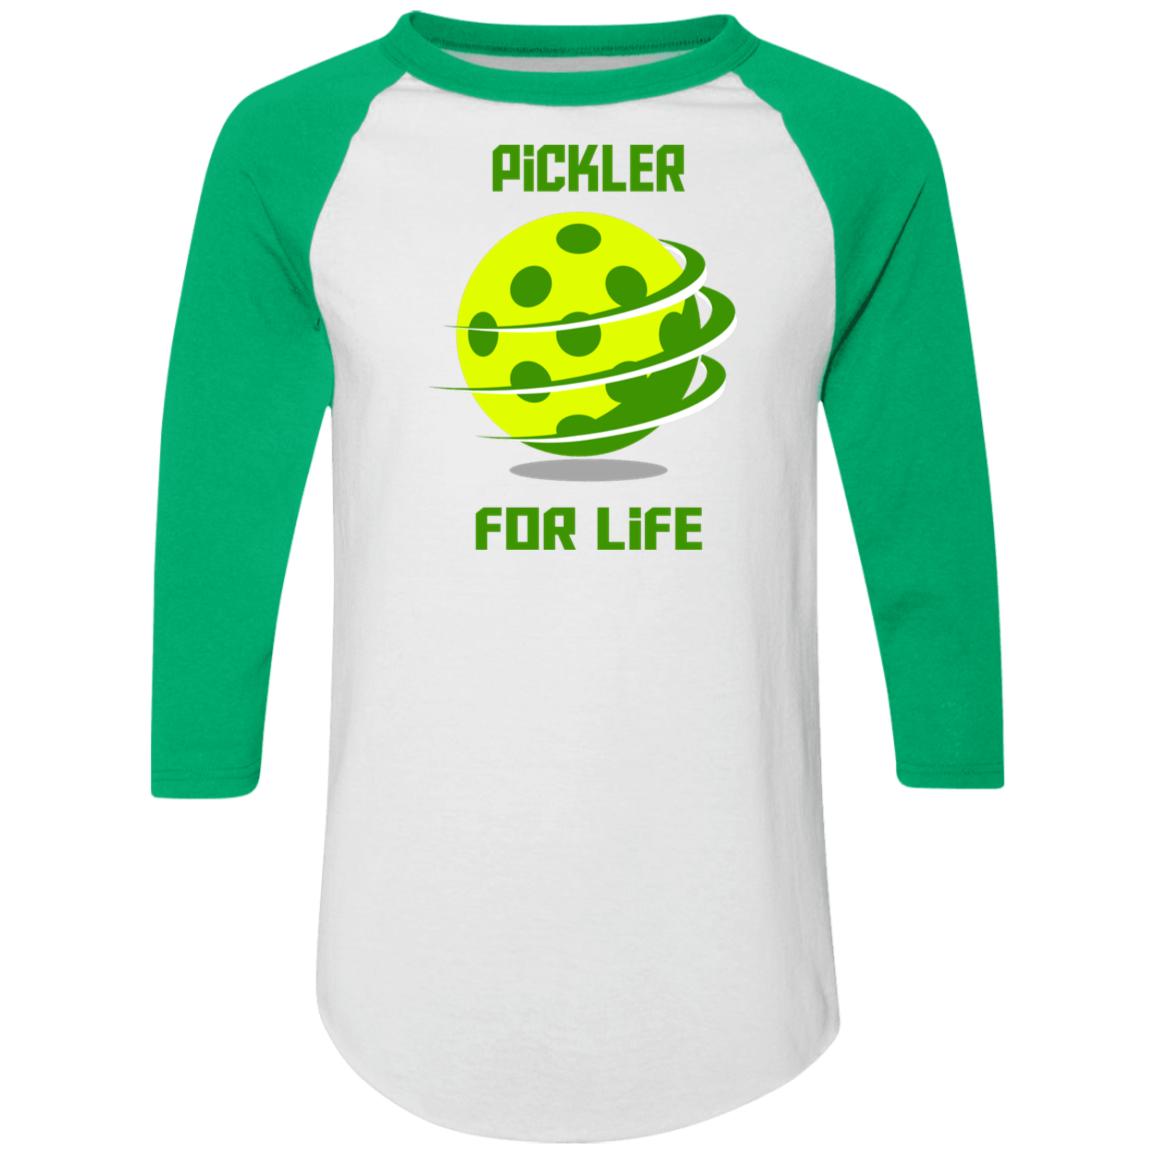 Pickler for Life Color block Raglan Jersey